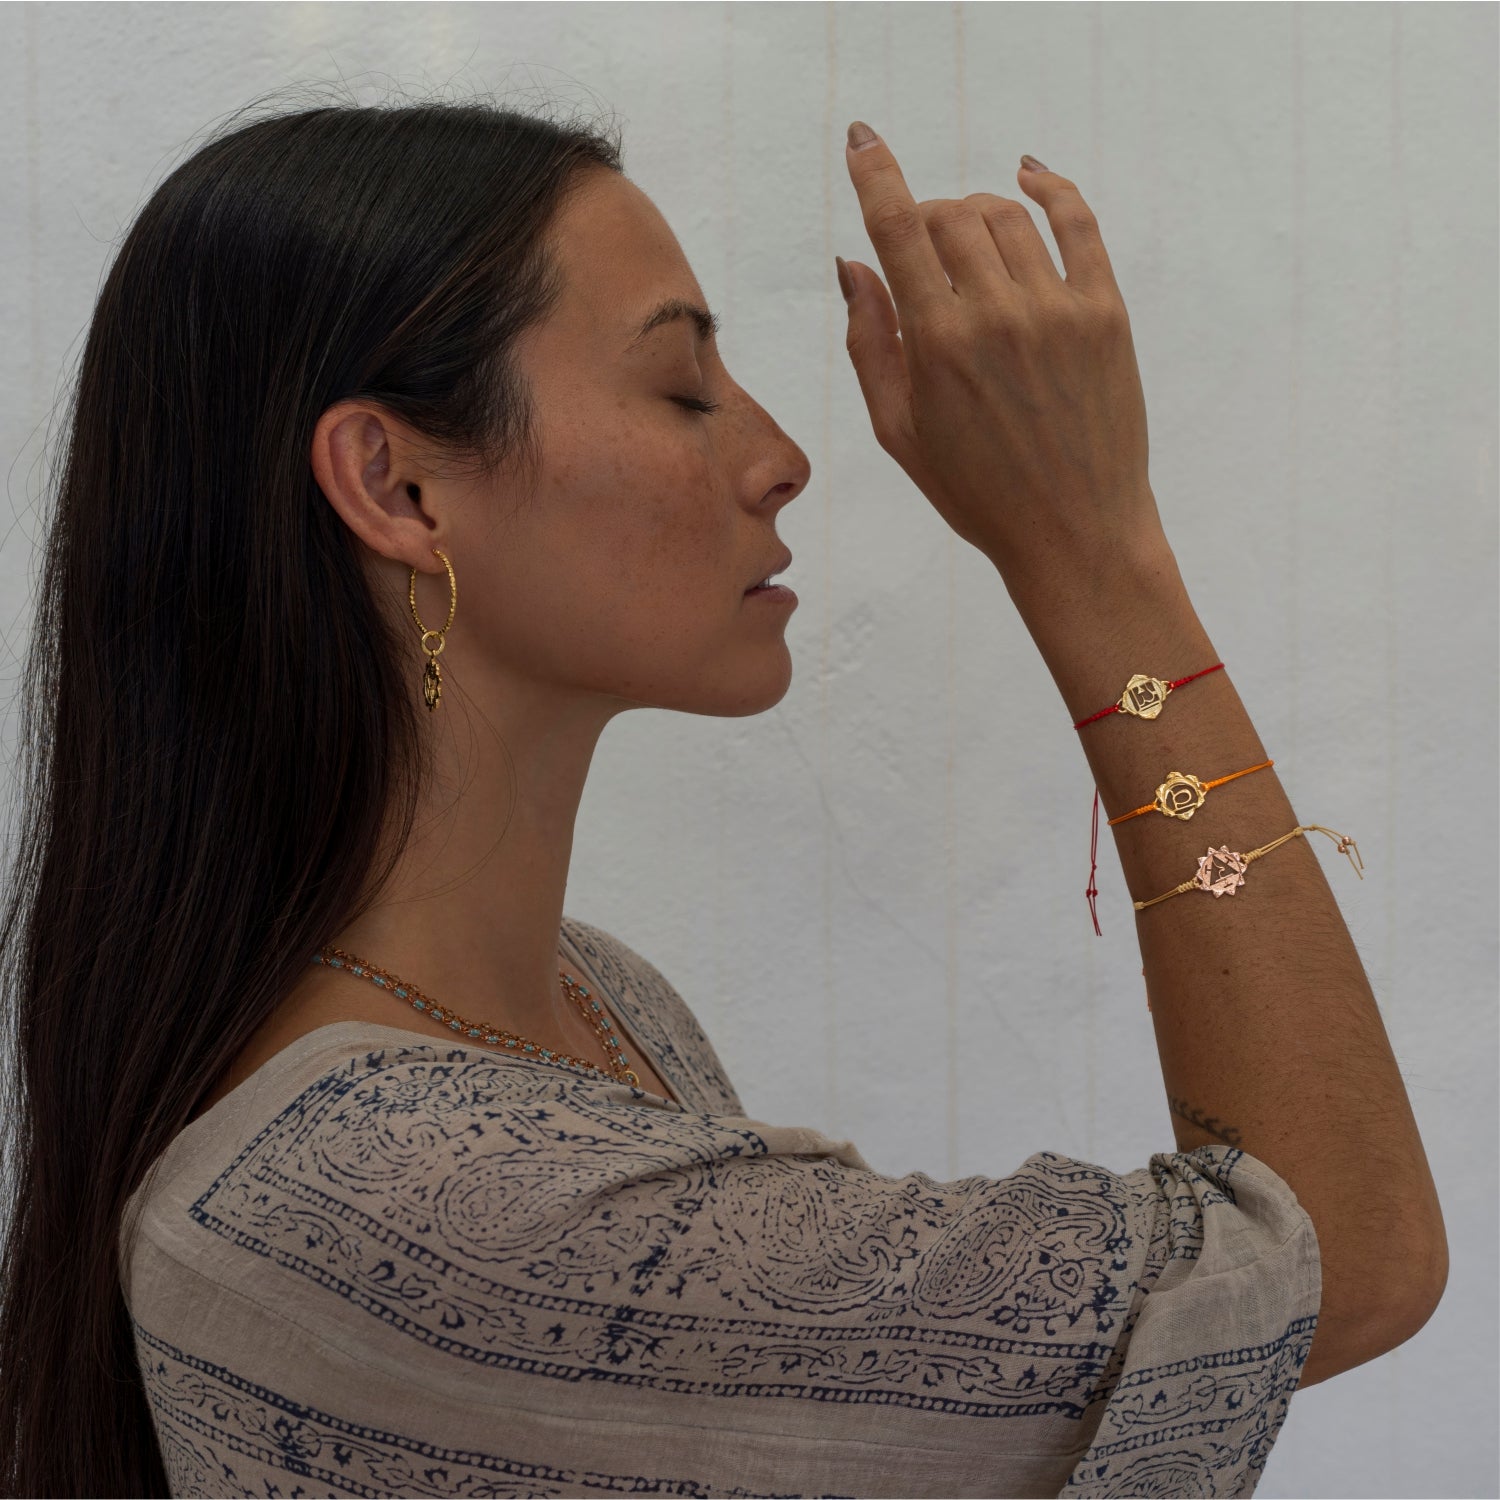 Die Yoga Lehrerin Steffi trägt ein hochwertig vergoldetes Wurzel Chakra Armband 